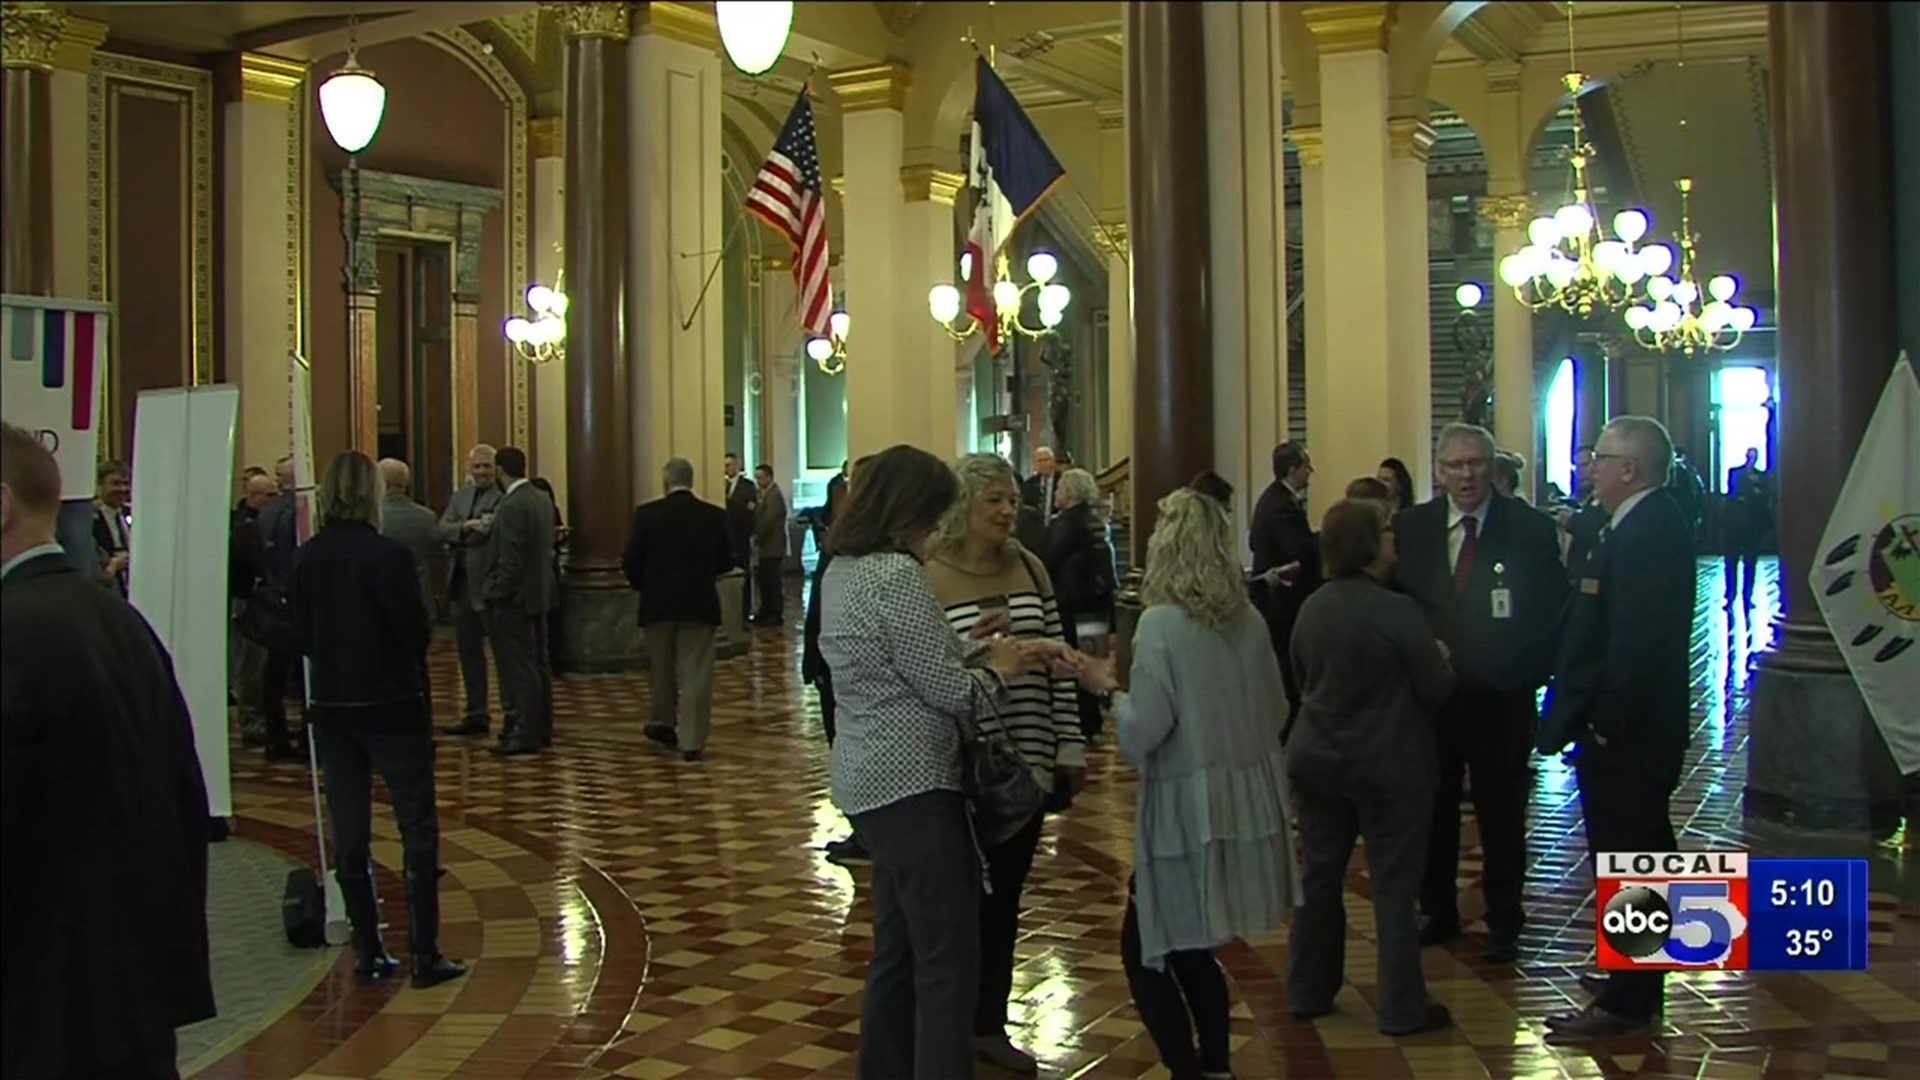 School superintendents meet with Iowa lawmakers